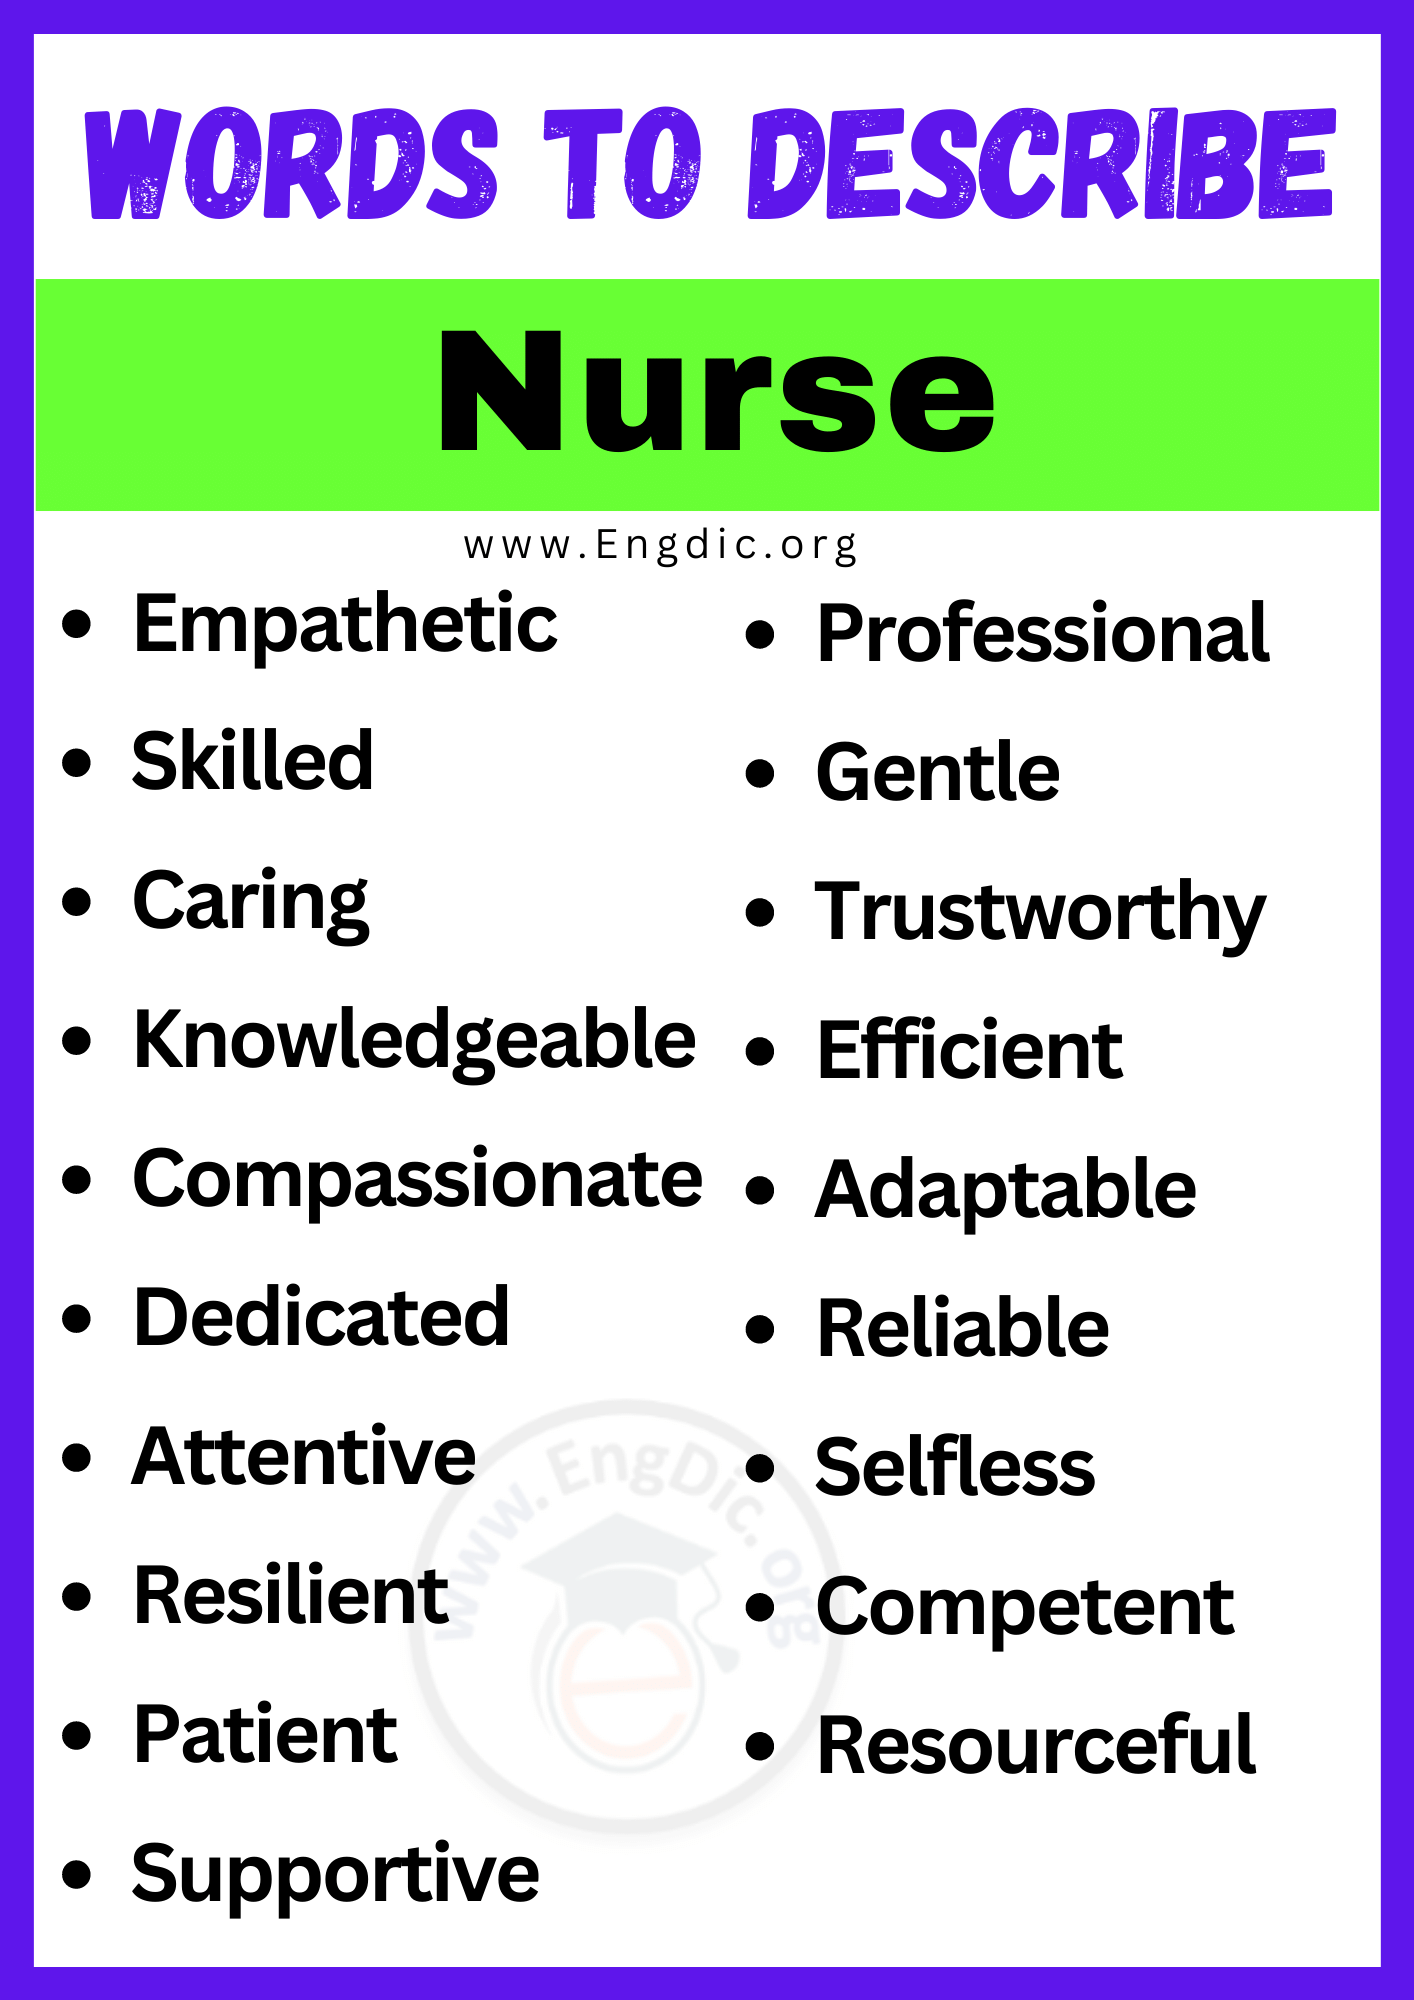 Words to Describe Nurse